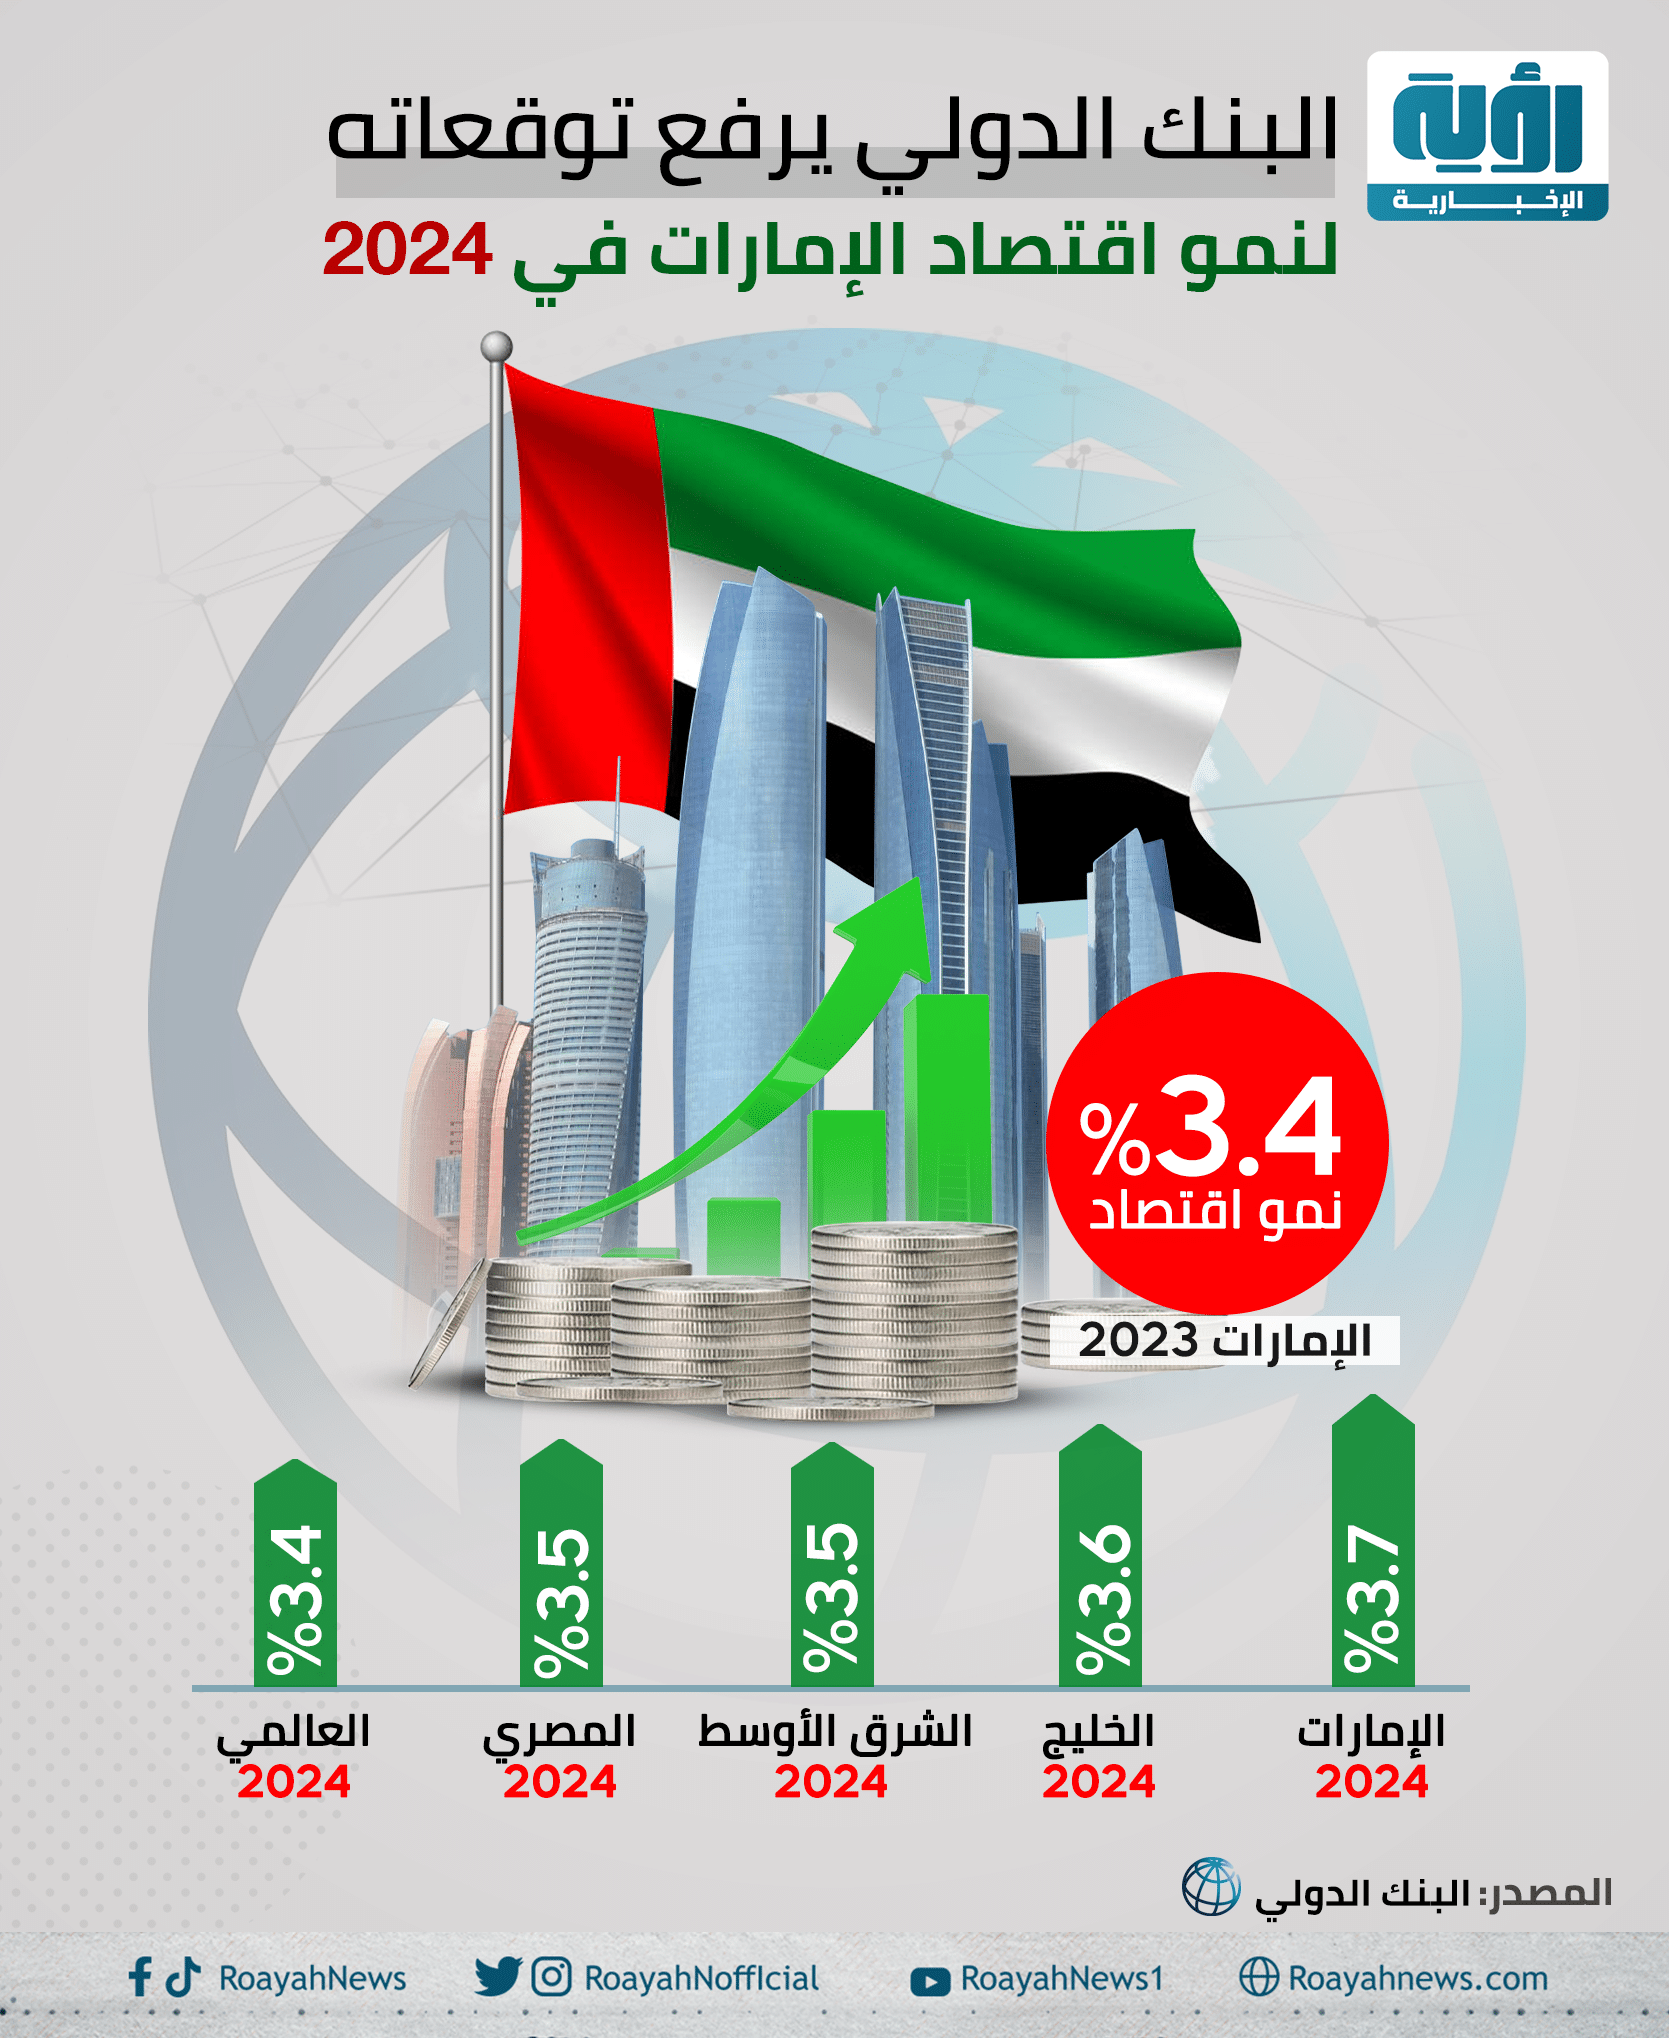 البنك الدولي يرفع توقعاته لنمو اقتصاد الإمارات في 2024